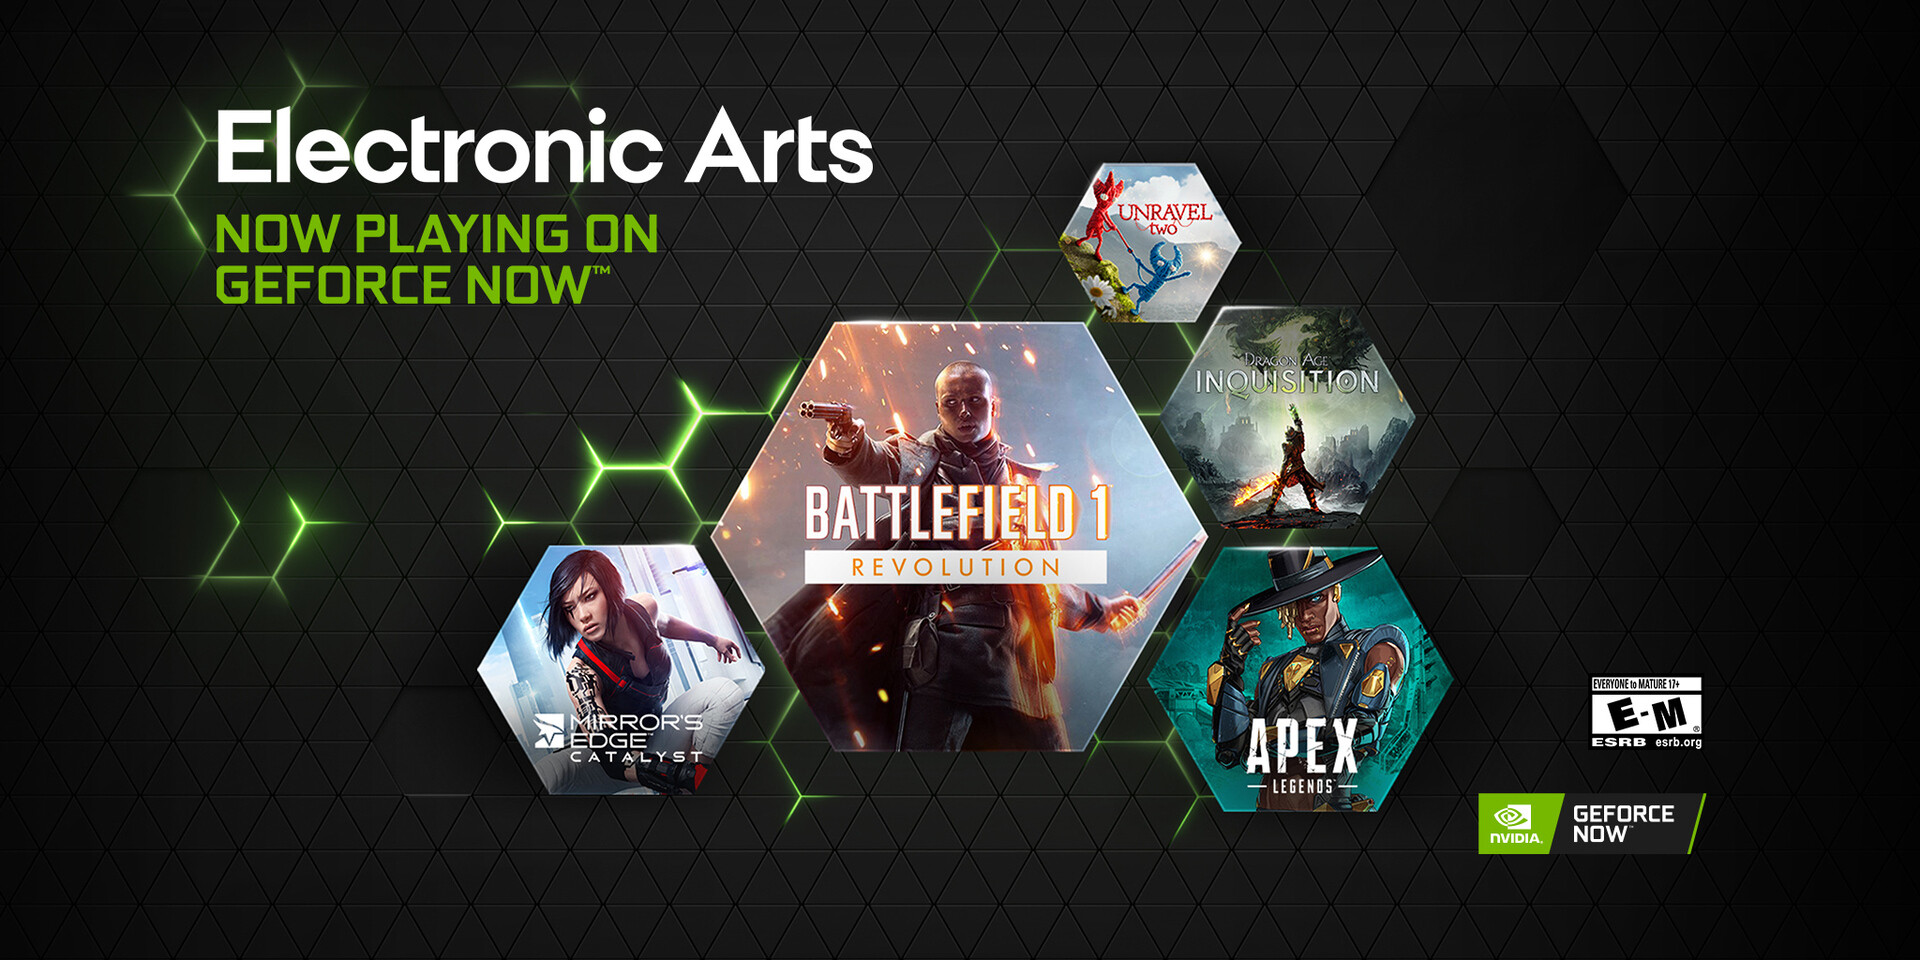 NVIDIA anunció que Electronic Arts está trayendo más de sus juegos de éxito al servicio de juegos en la nube NVIDIA GeForce NOW